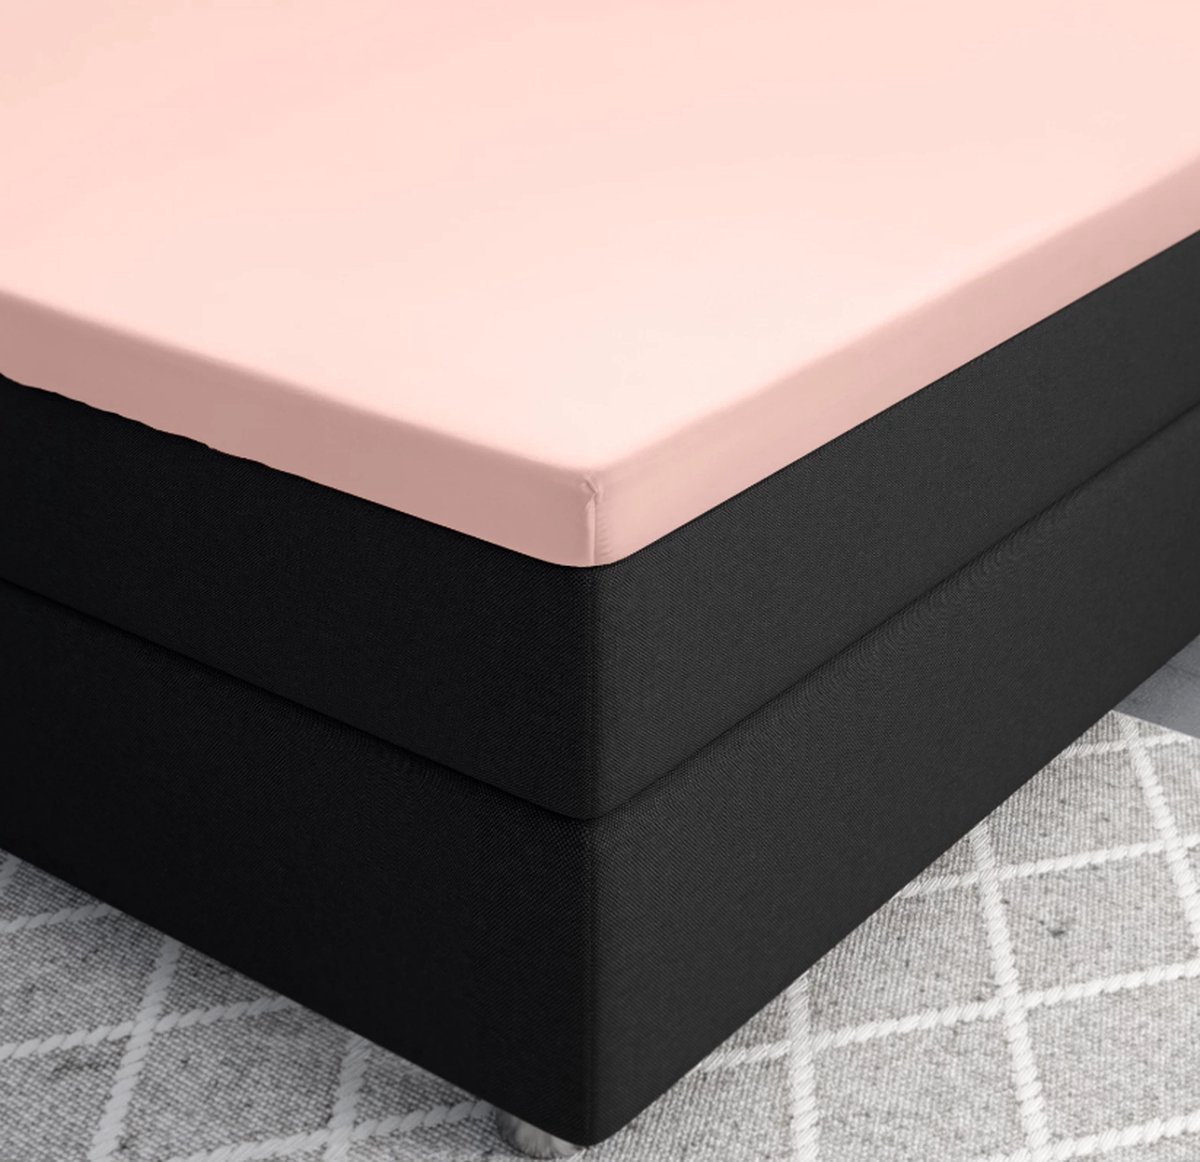 Premium katoen/satijn hoeslaken roze - 90x200 (eenpersoons) - zacht en ademend - luxe en chique uitstraling - subtiele glans - ideale pasvorm